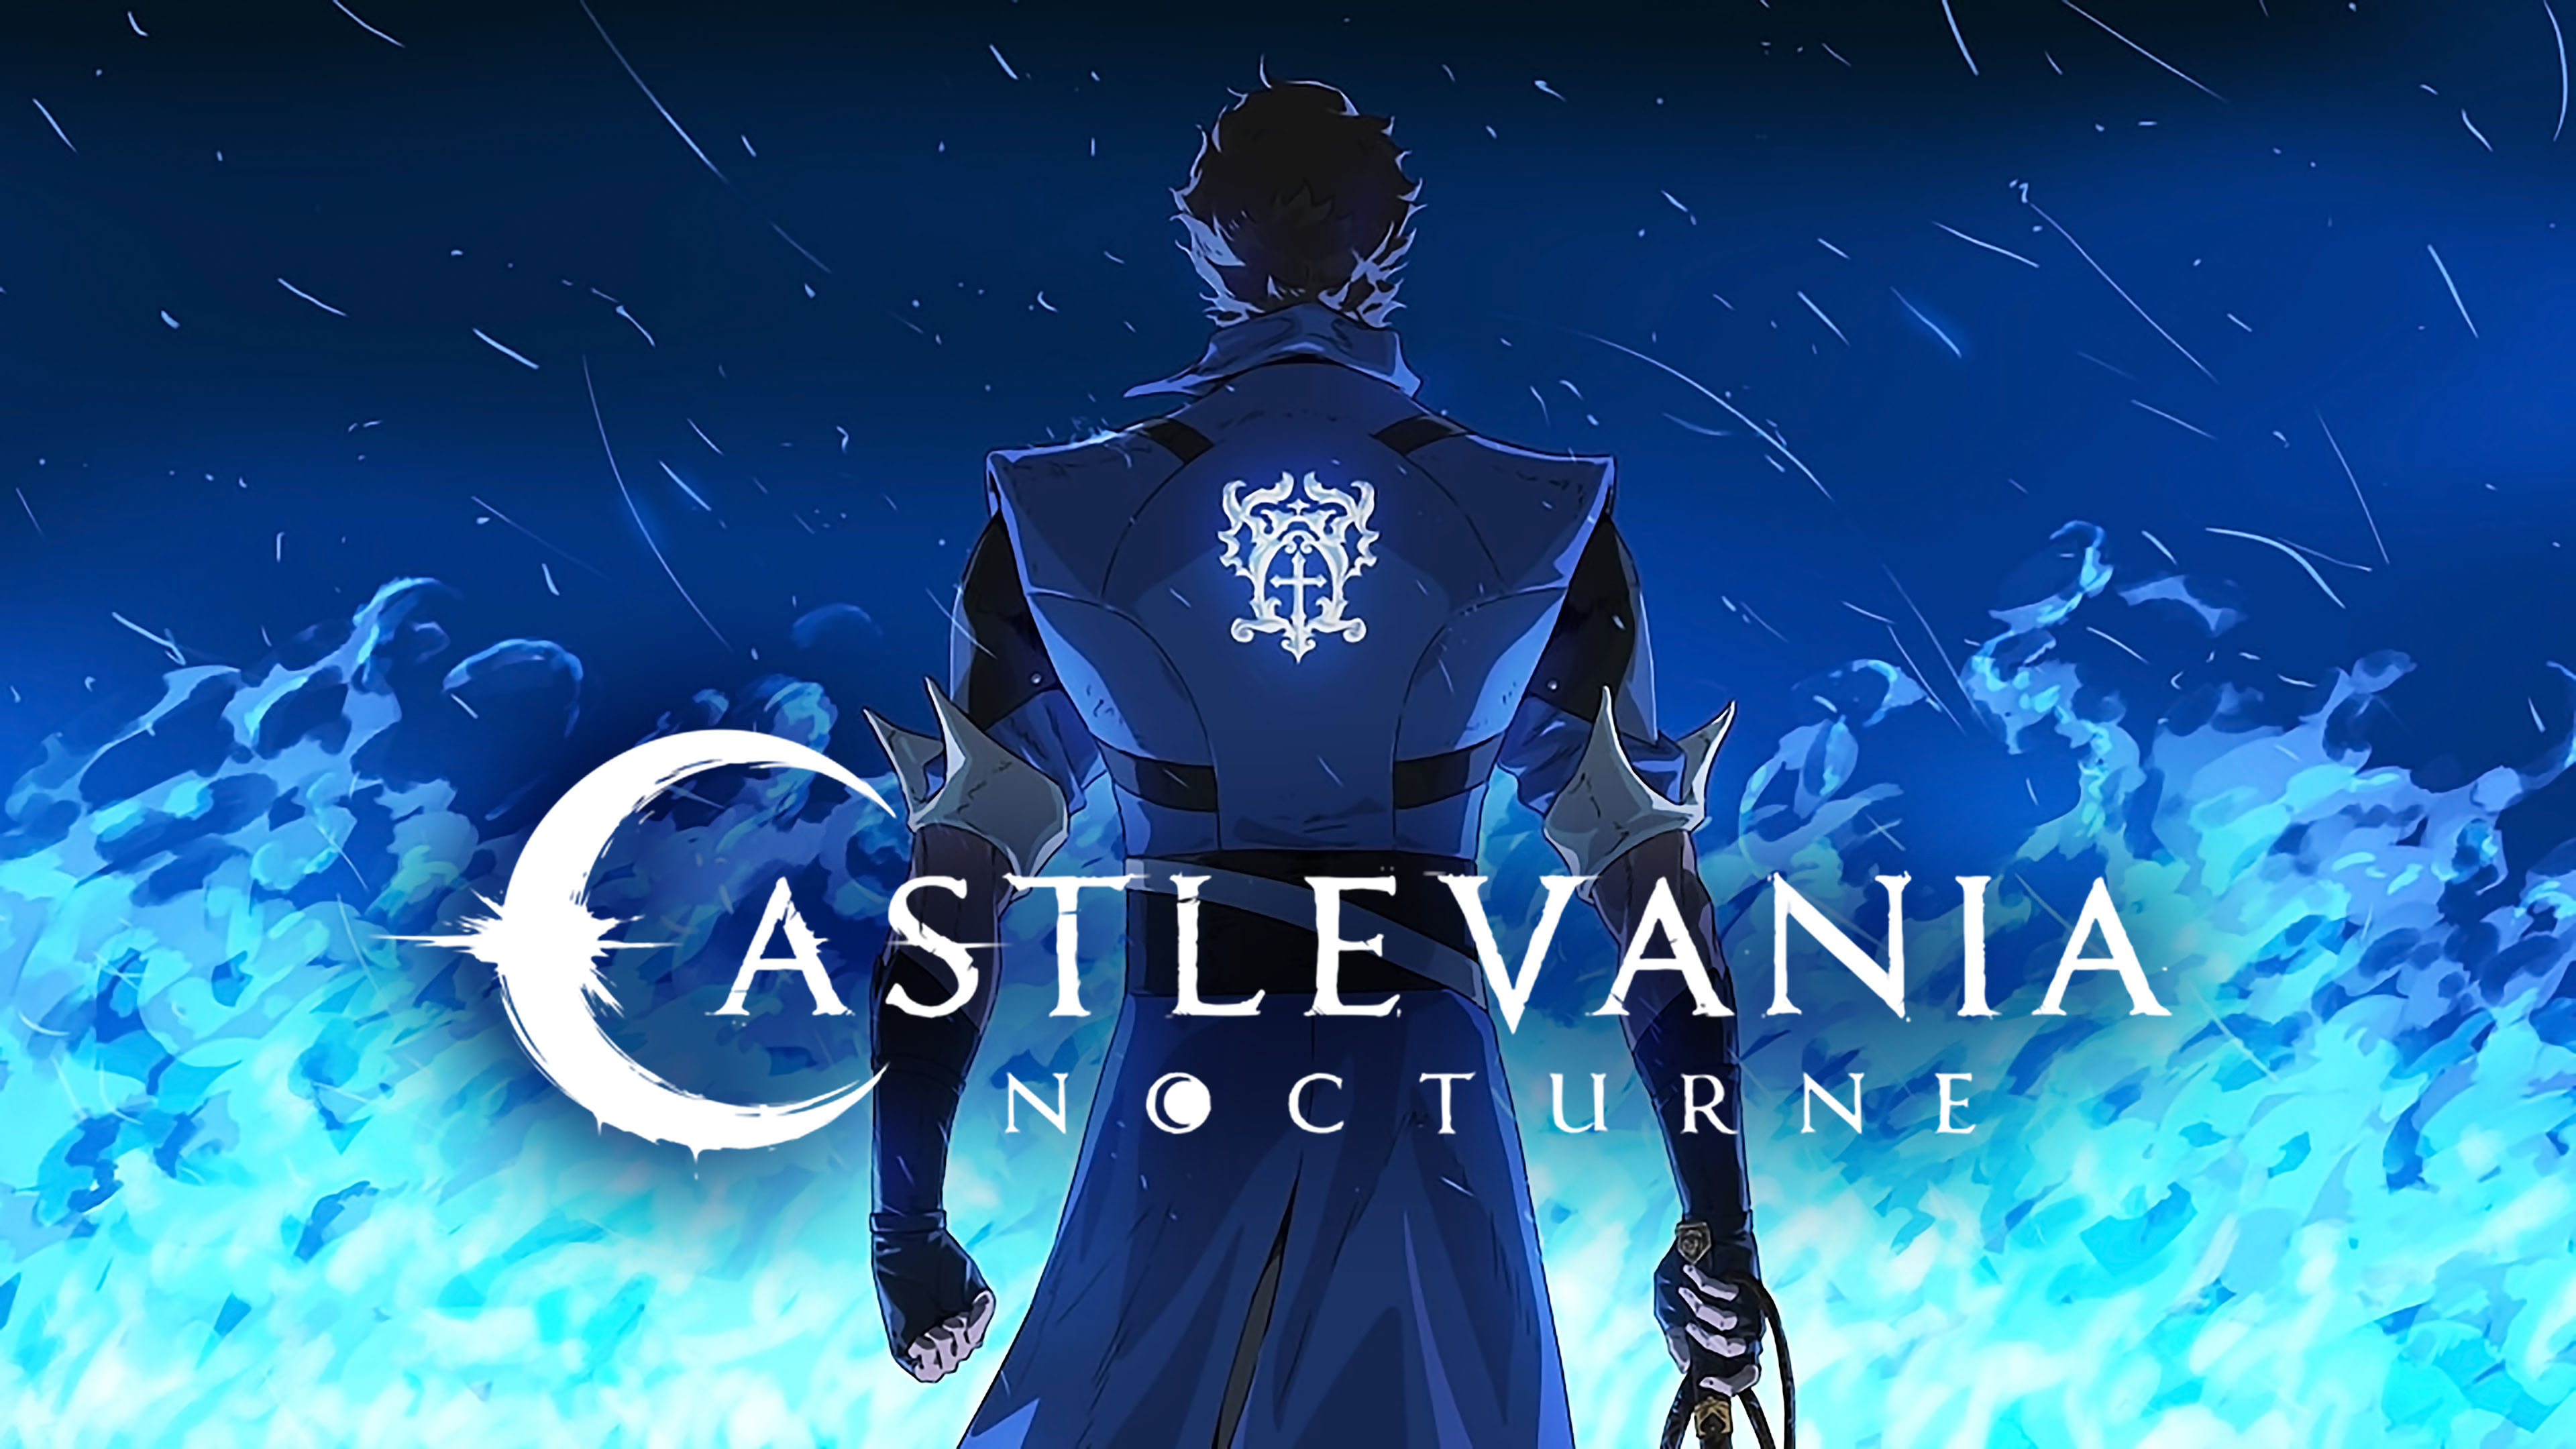 Den andra säsongen av Castlevania: Nocturne är redan under utveckling